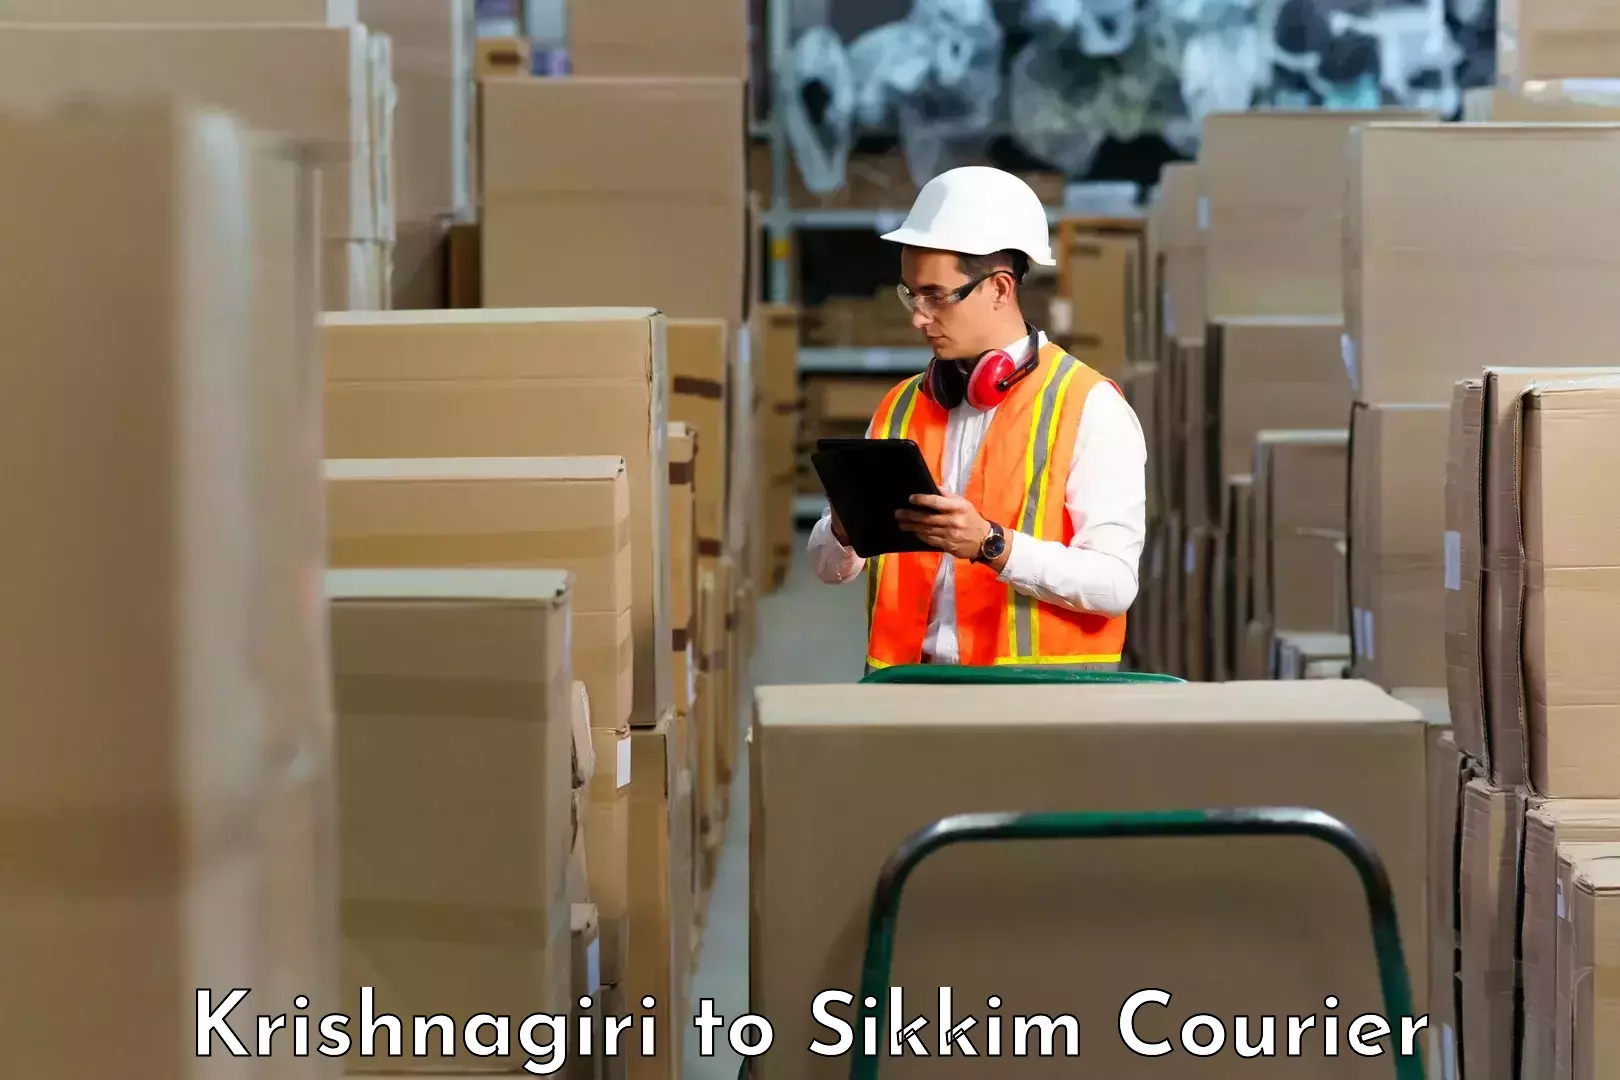 Efficient logistics management in Krishnagiri to Sikkim